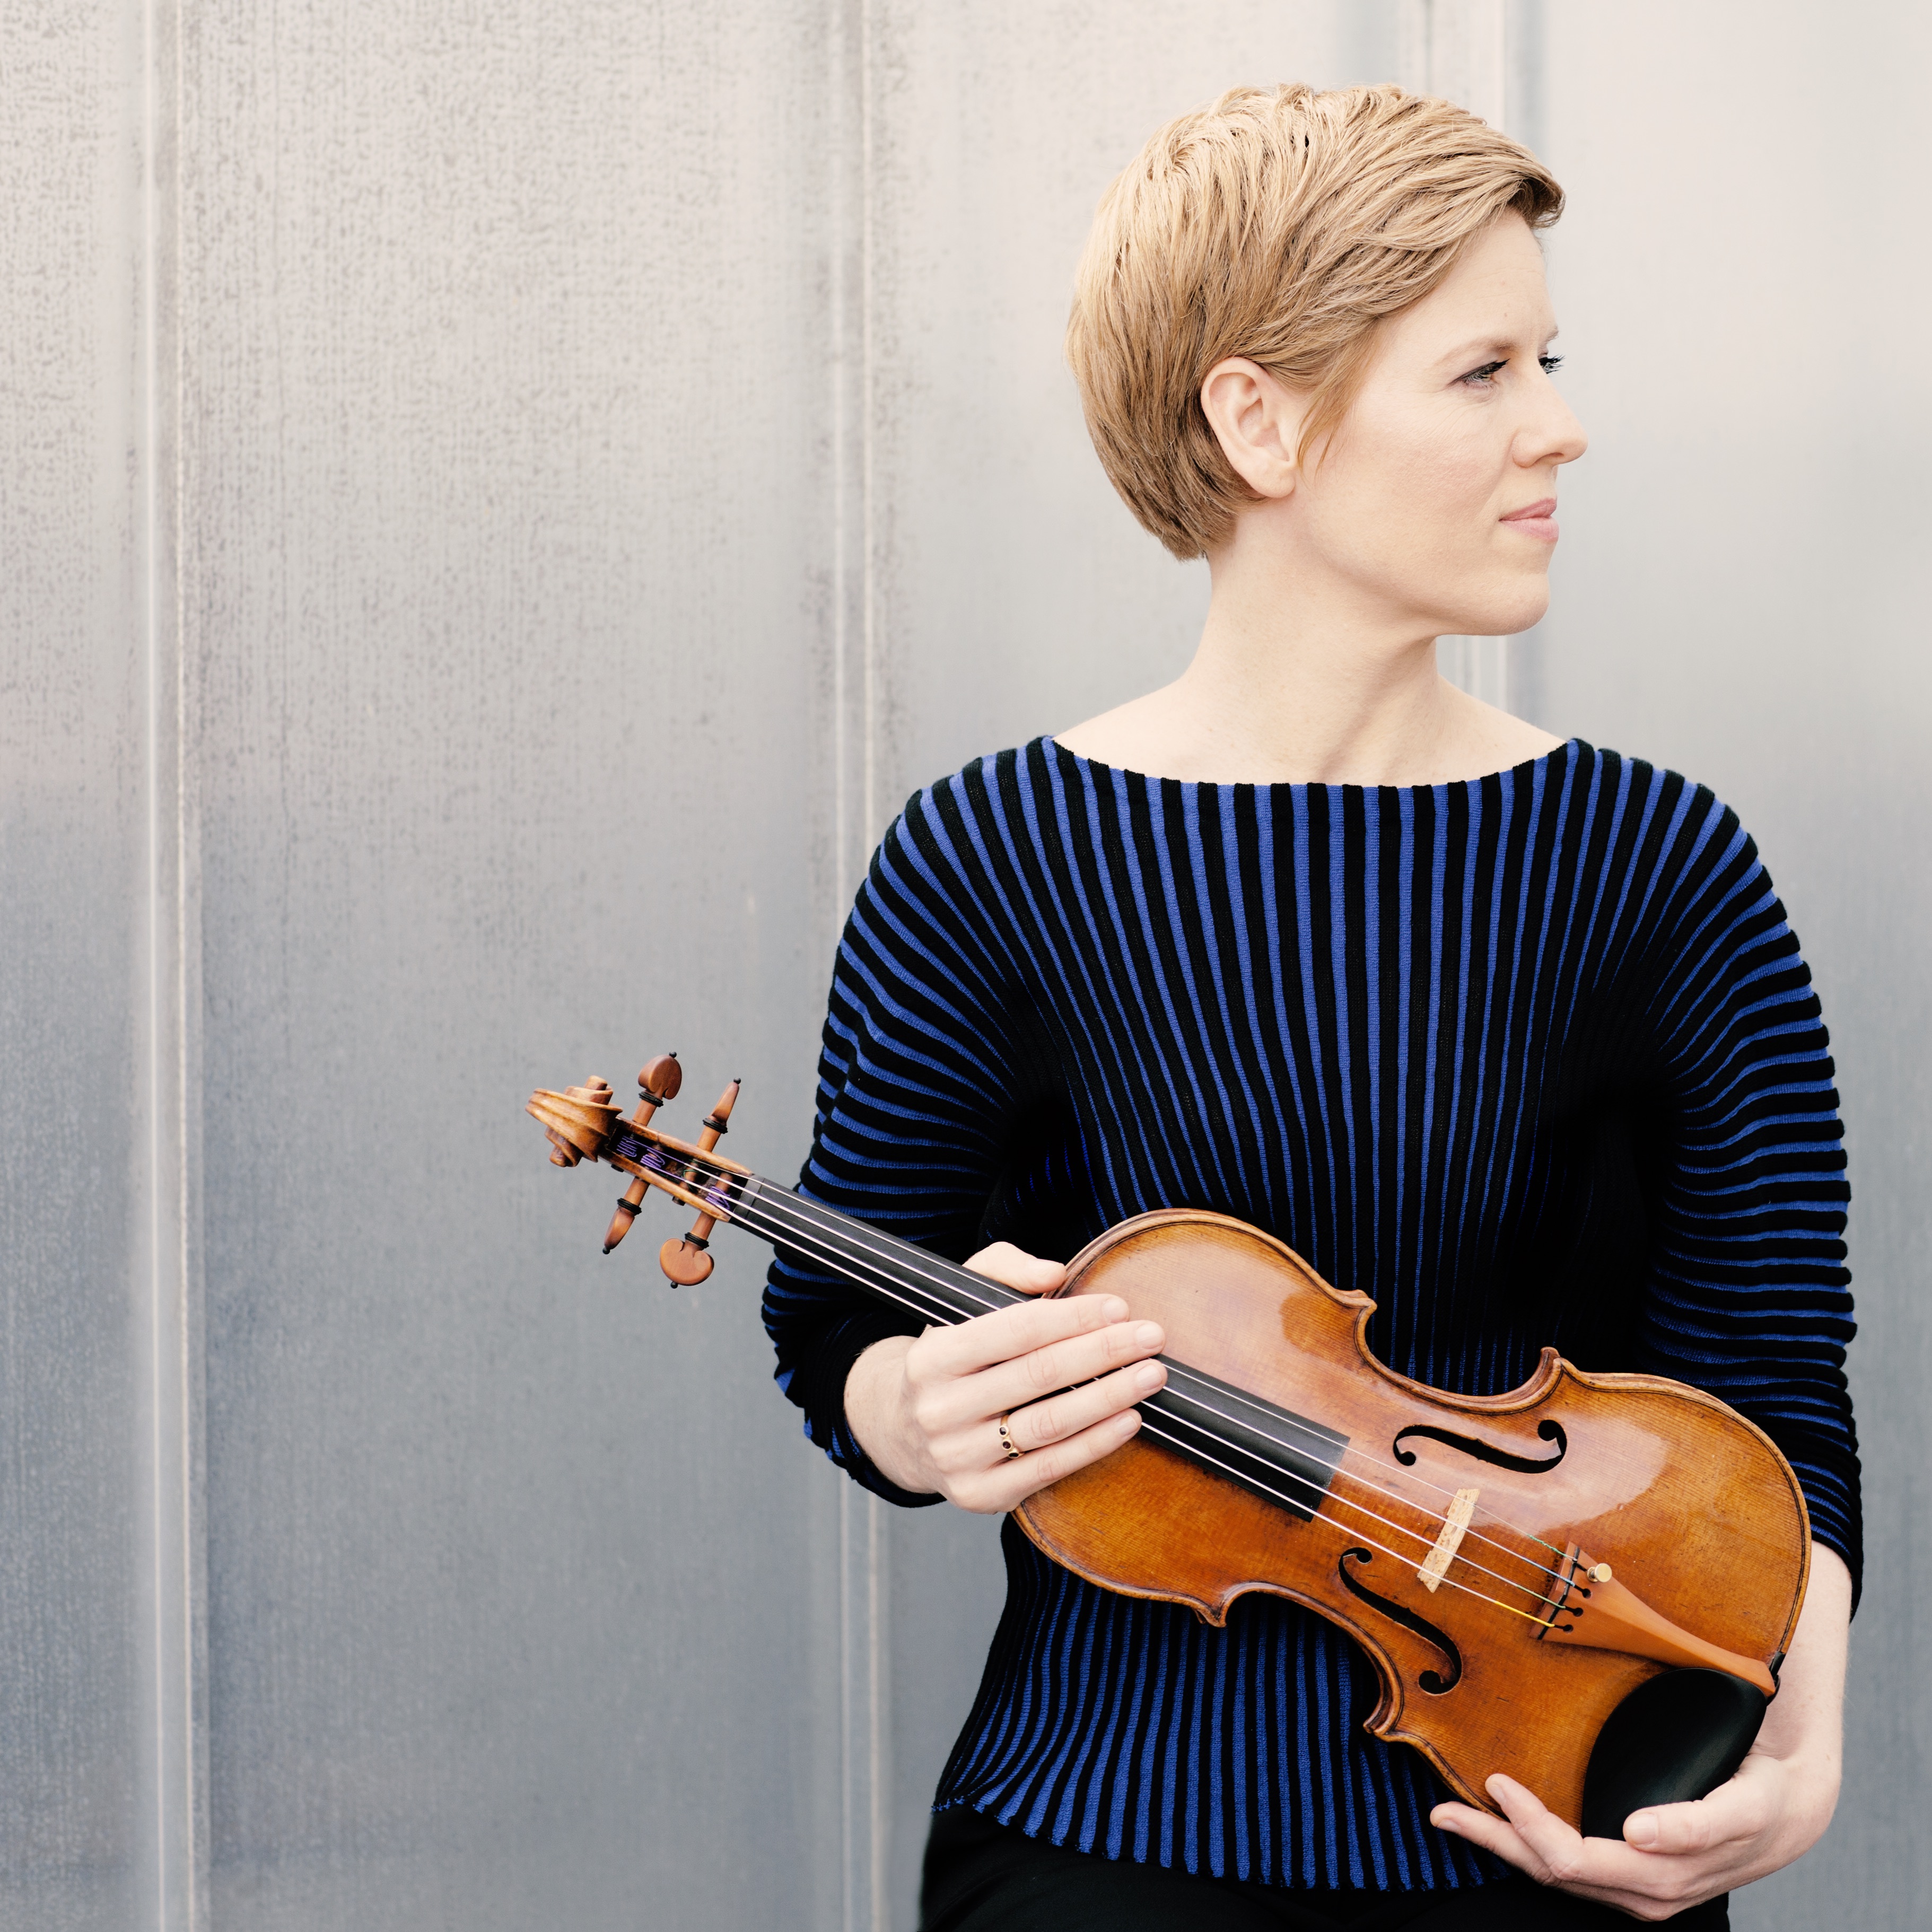 La violinista Isabelle Faust, artista residente del CNDM, en el Ciclo Series 20/21